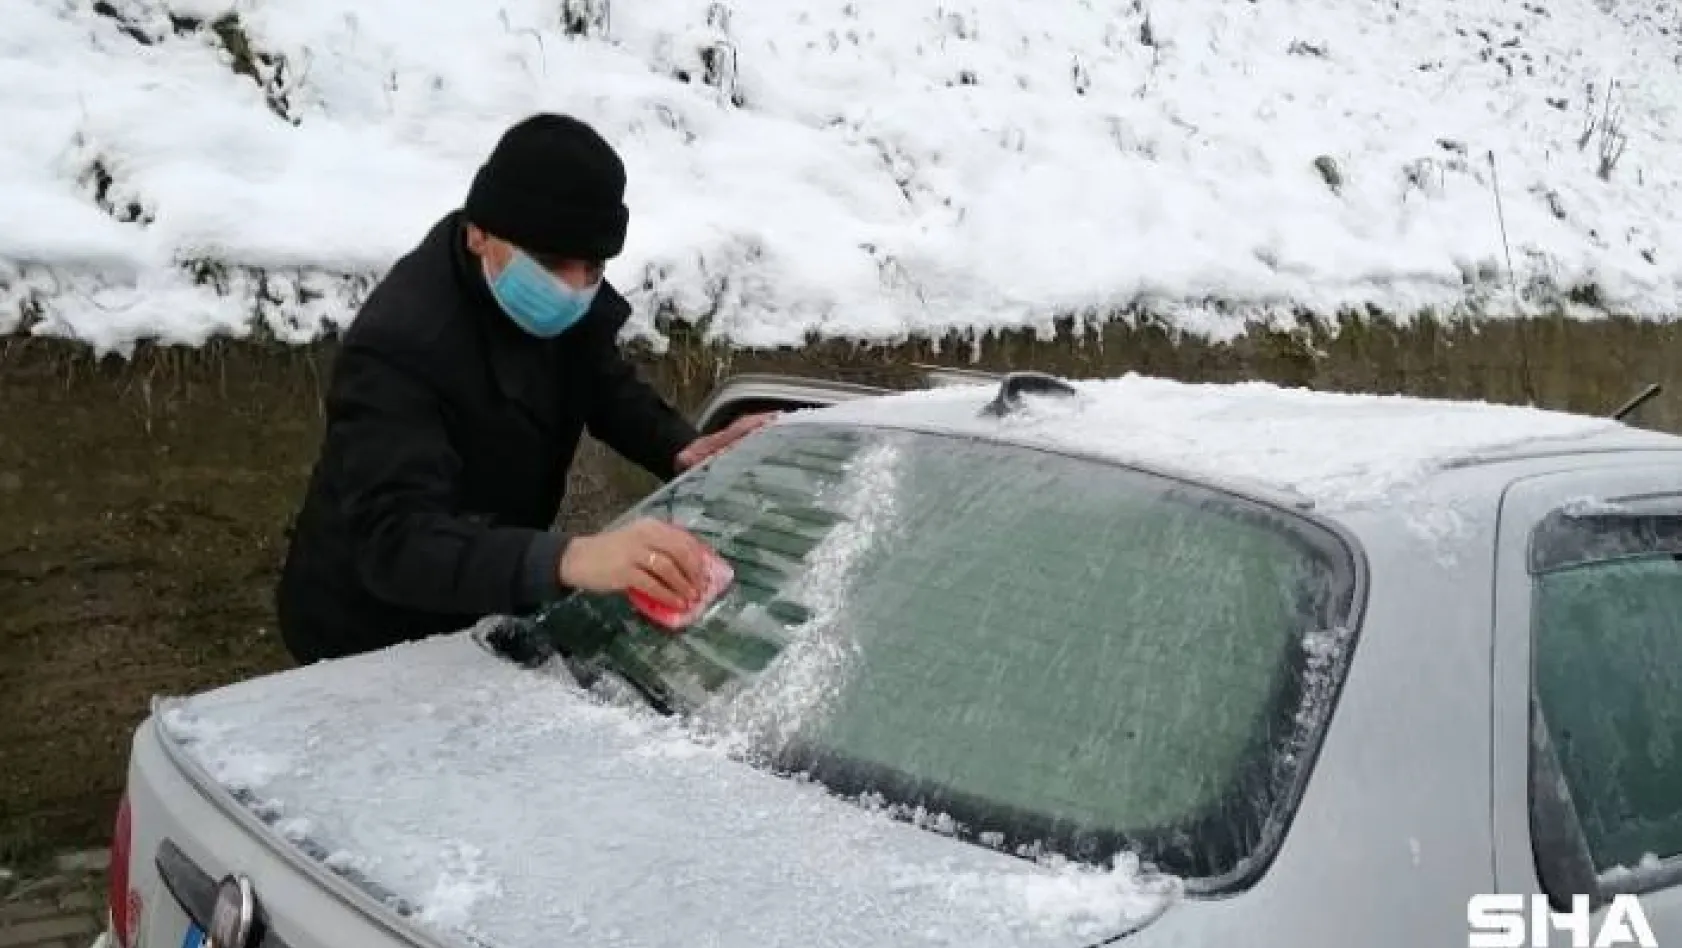 Vatandaşlar araçlarının üzerinde donan karları temizledi